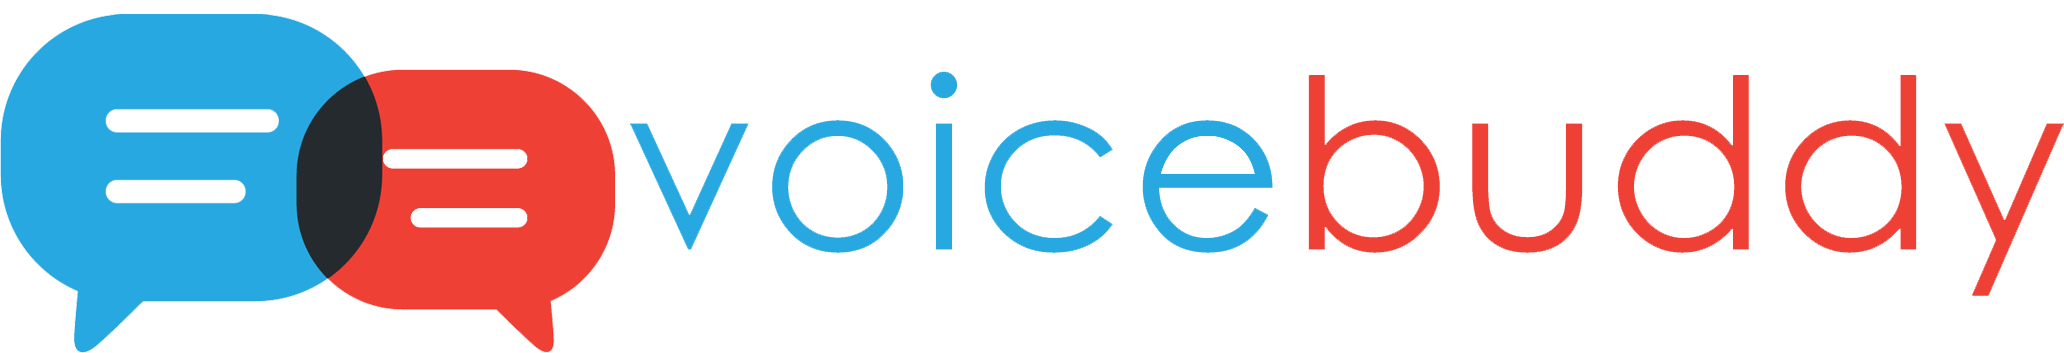 VoiceBuddy logo